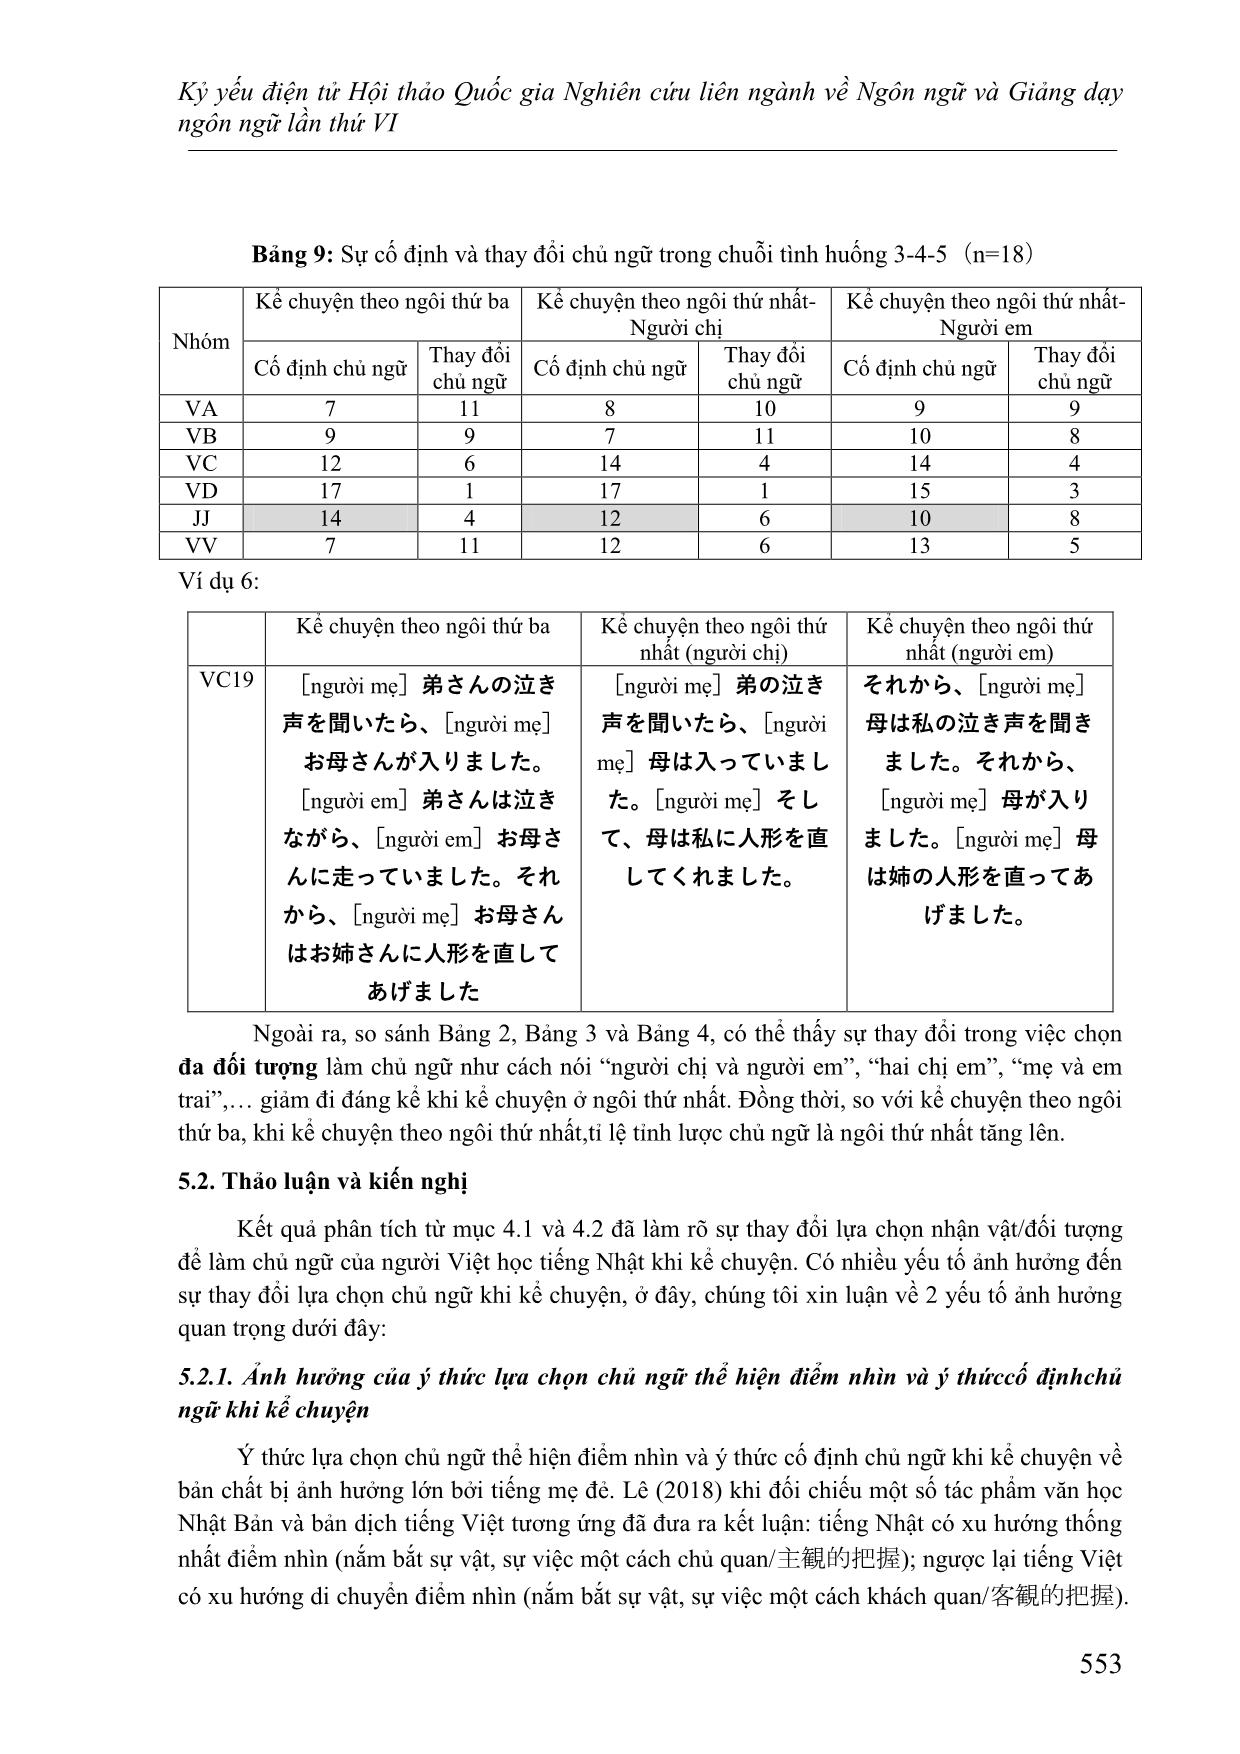 Nghiên cứu về sự lựa chọn chủ ngữ thể hiện điểm nhìn của người Việt học tiếng Nhật khi kể chuyện theo các ngôi kể khác nhau trang 10